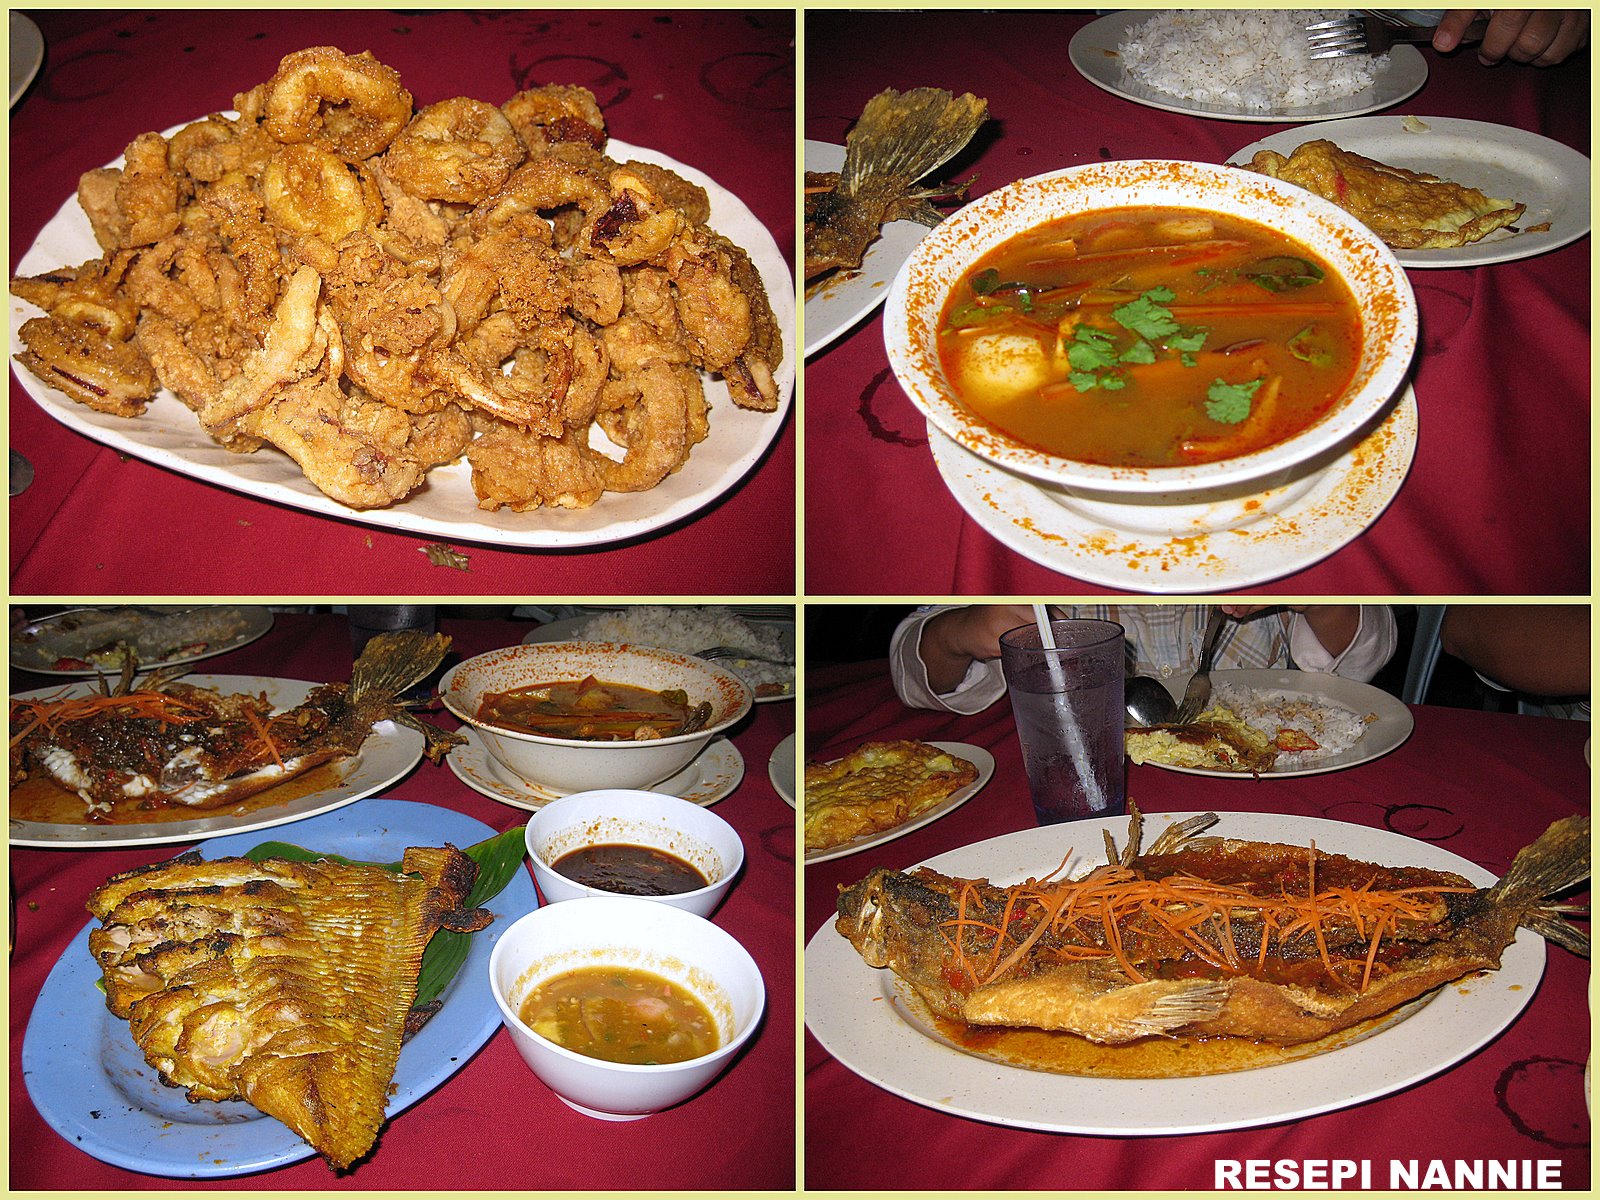 RESEPI NENNIE KHUZAIFAH: Makan malam di Jeram,Kuala Selangor